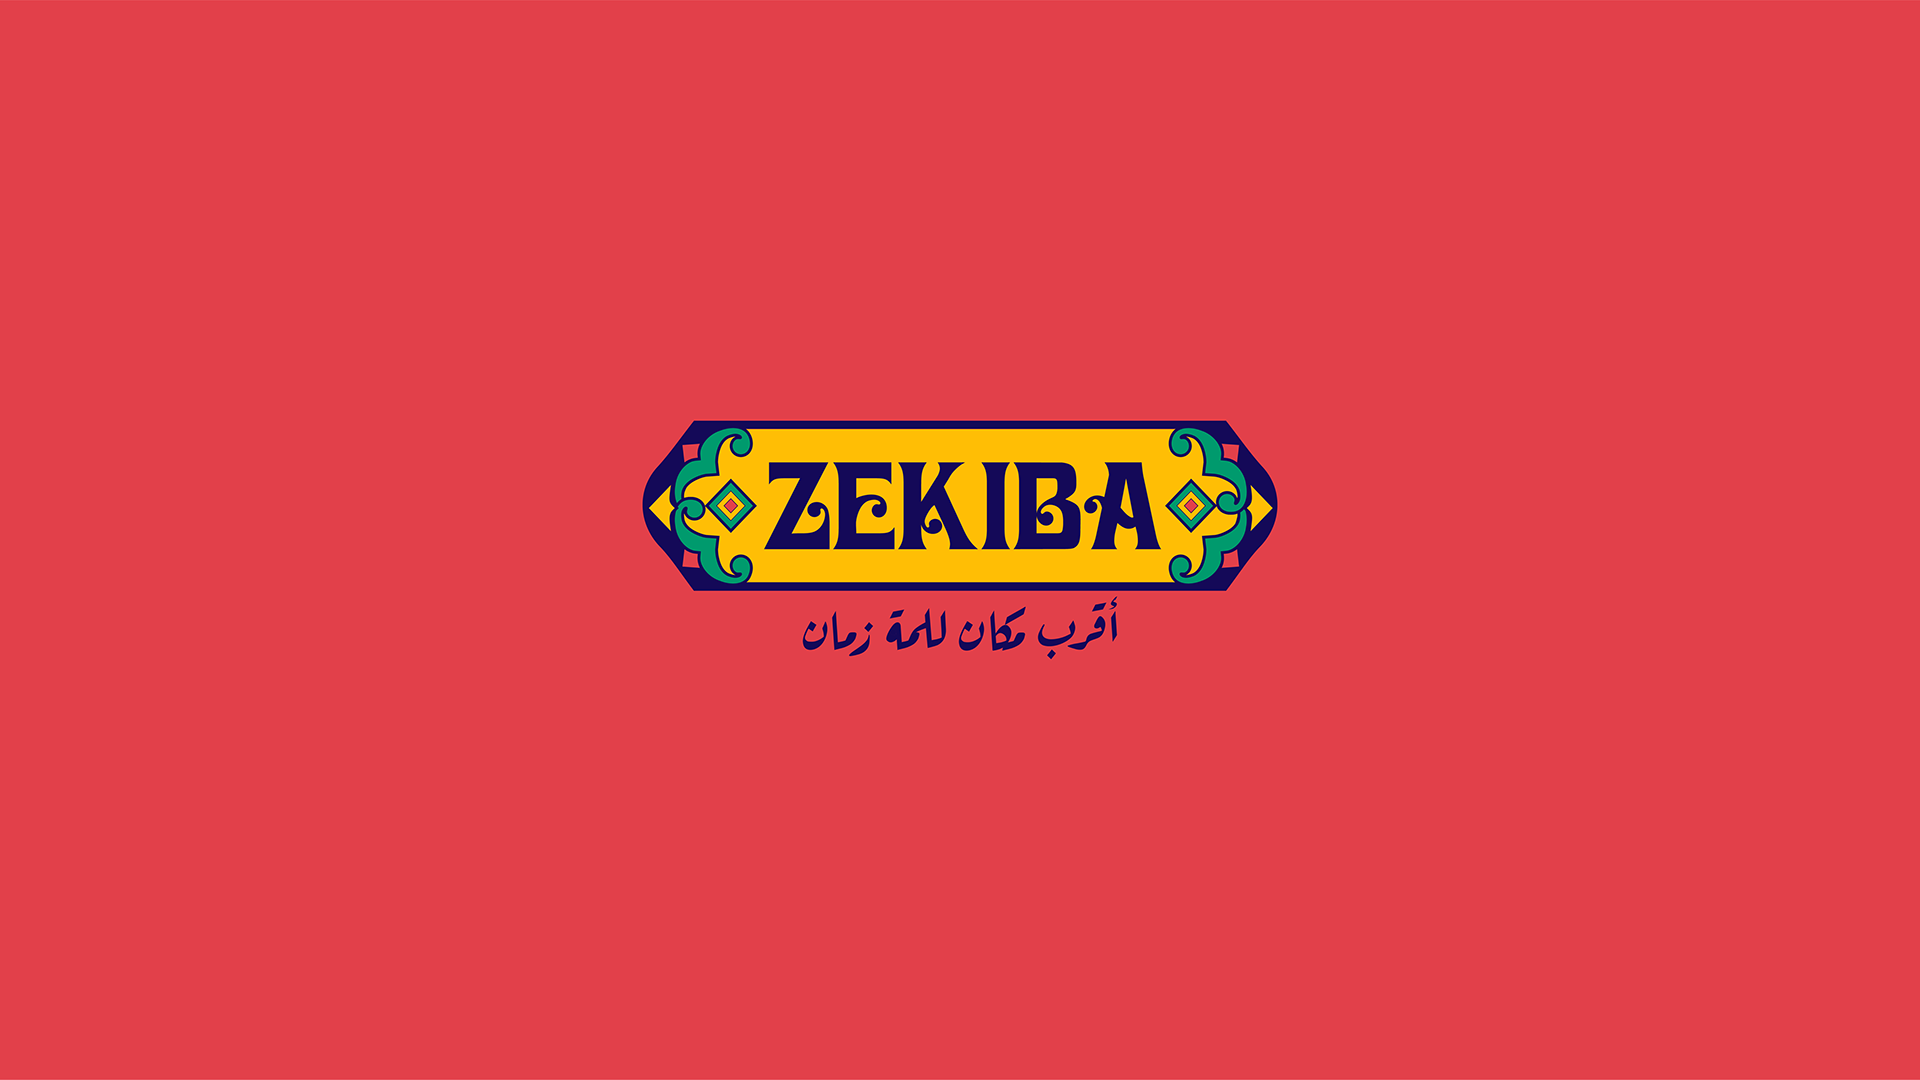 Zekiba Restaurant Branding